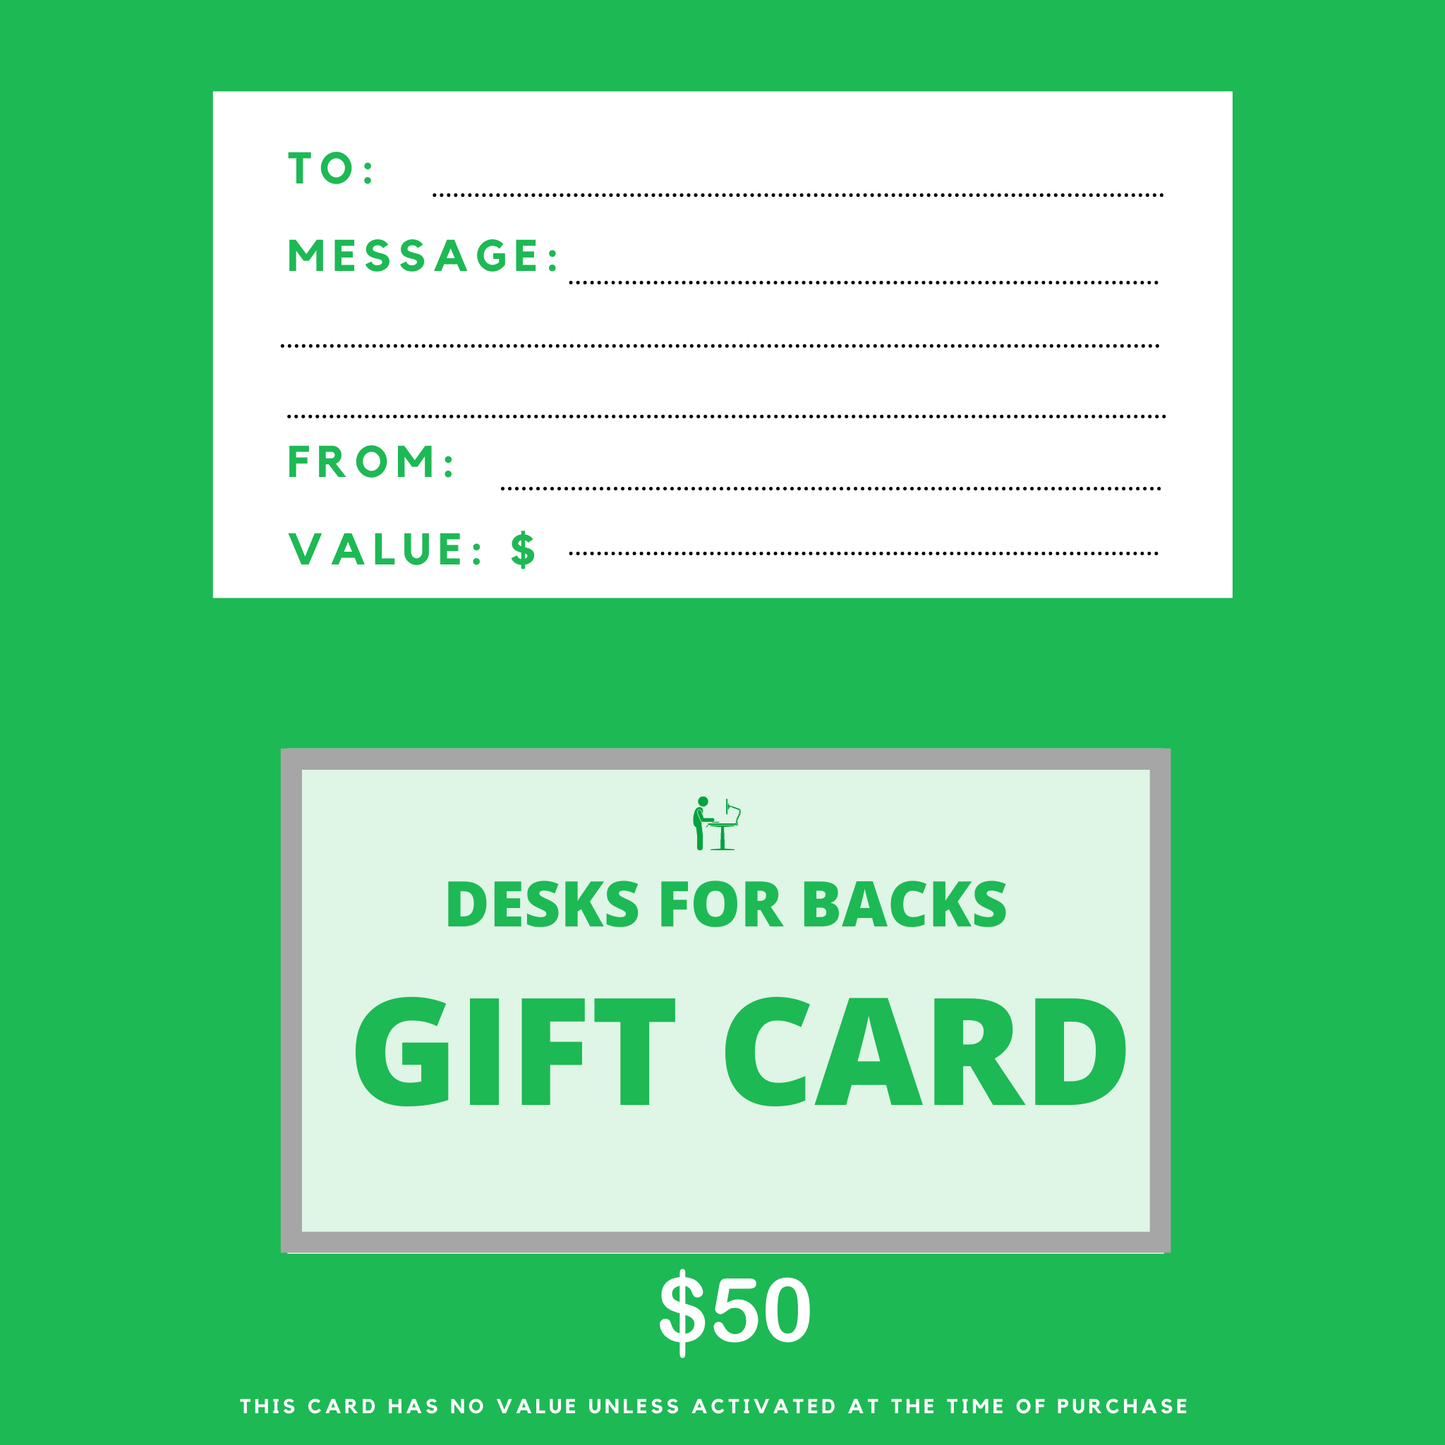 Desks for backs gift card $50